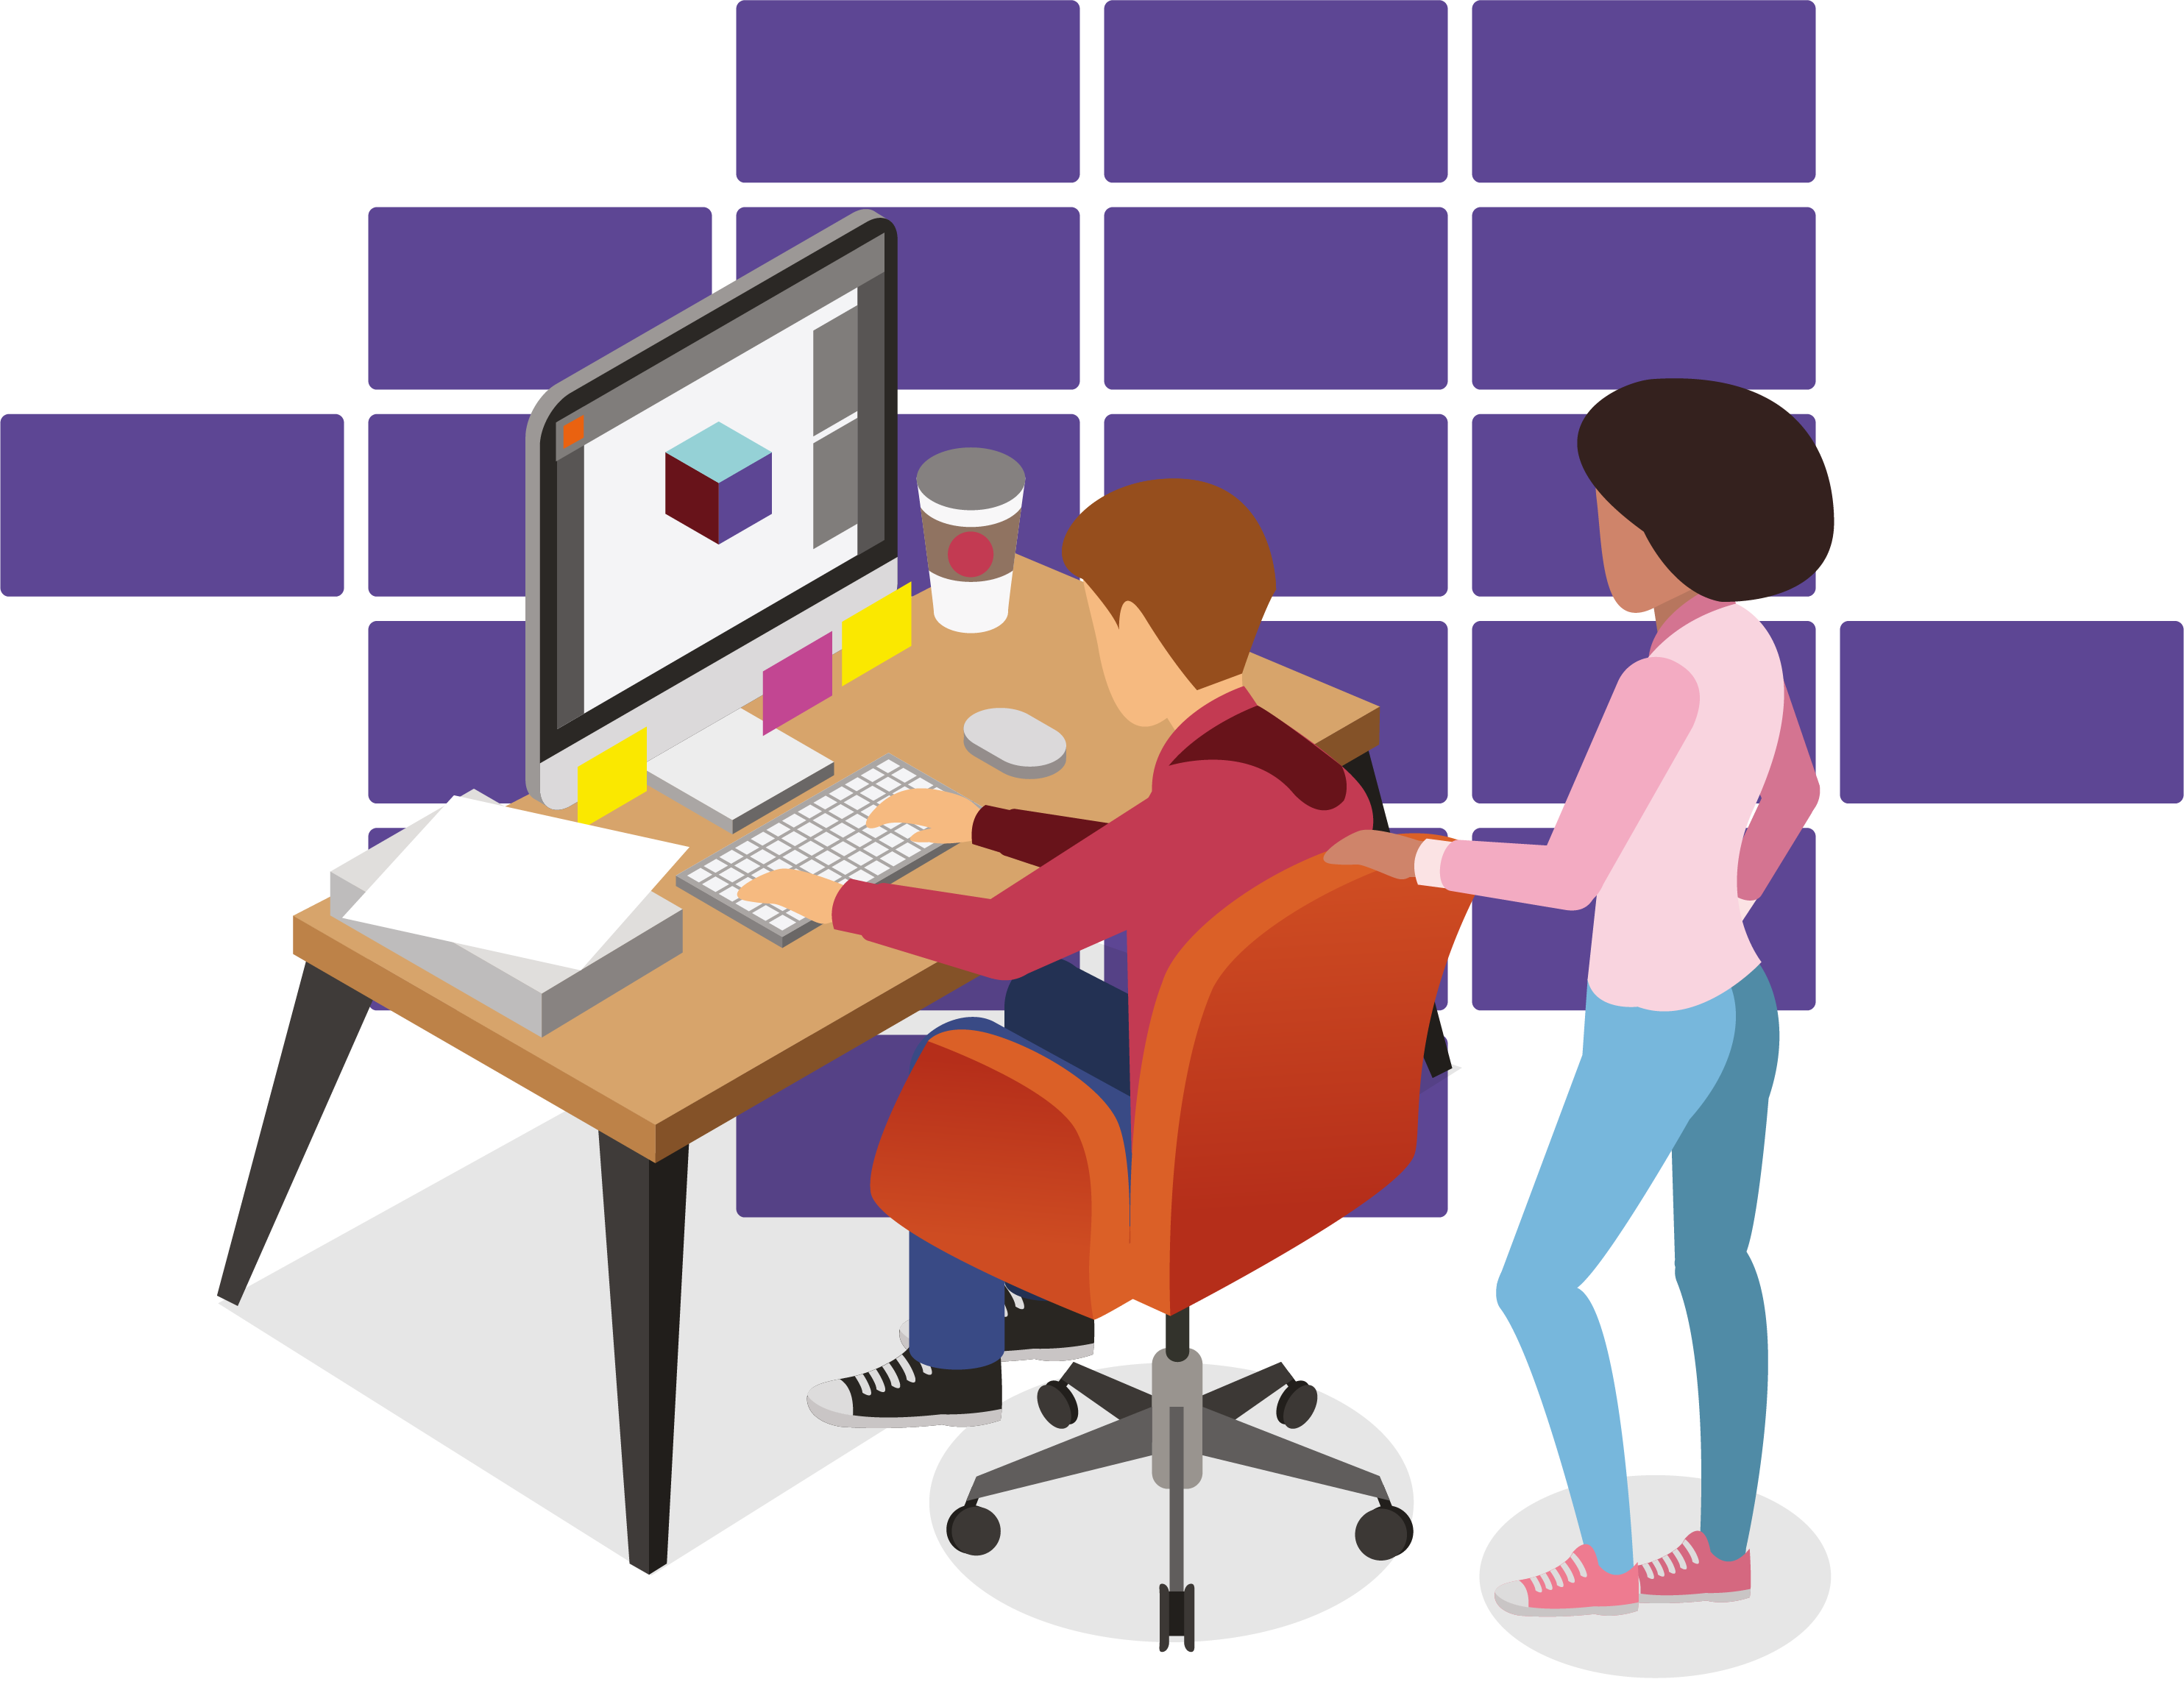 ilustração de estudantes, um sentado e outro em pé, buscando vagas de estágio no computador